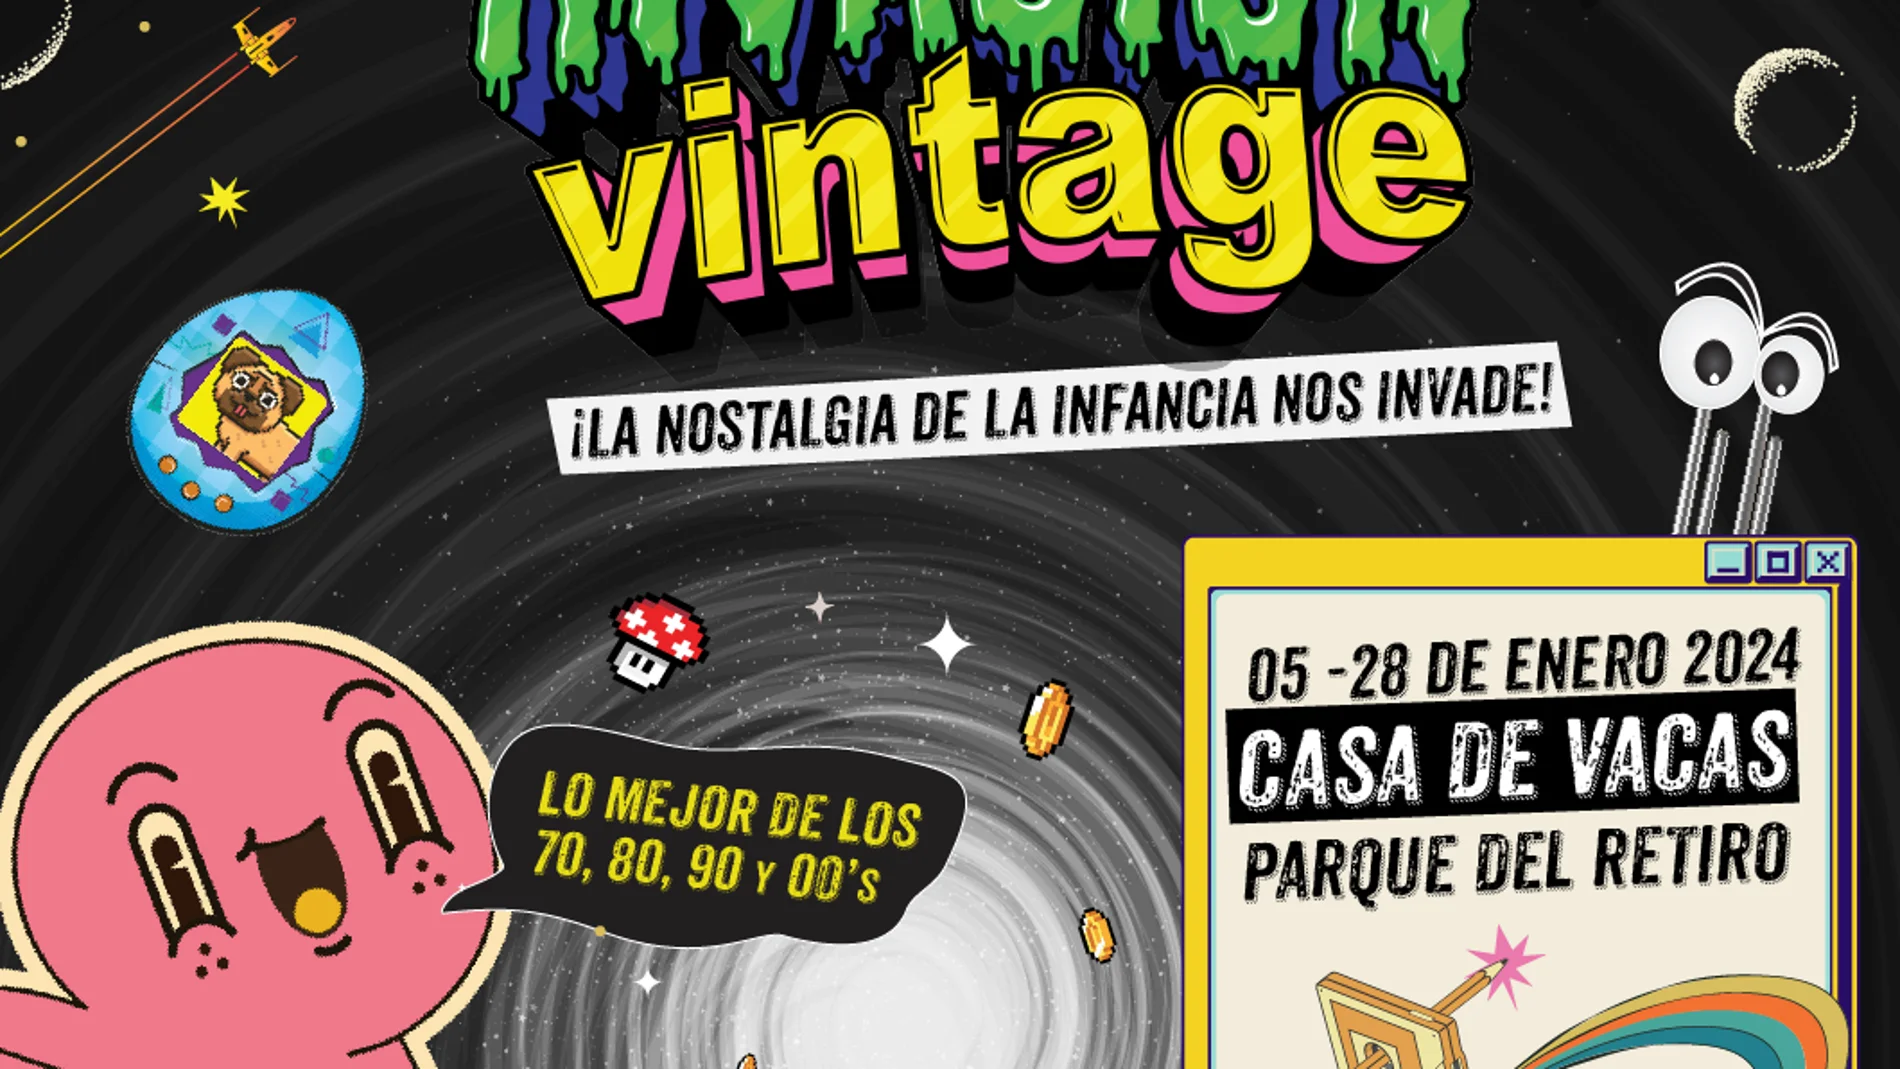 Viaje a los 70: La exposición "Invasión Vintage" llega a Madrid